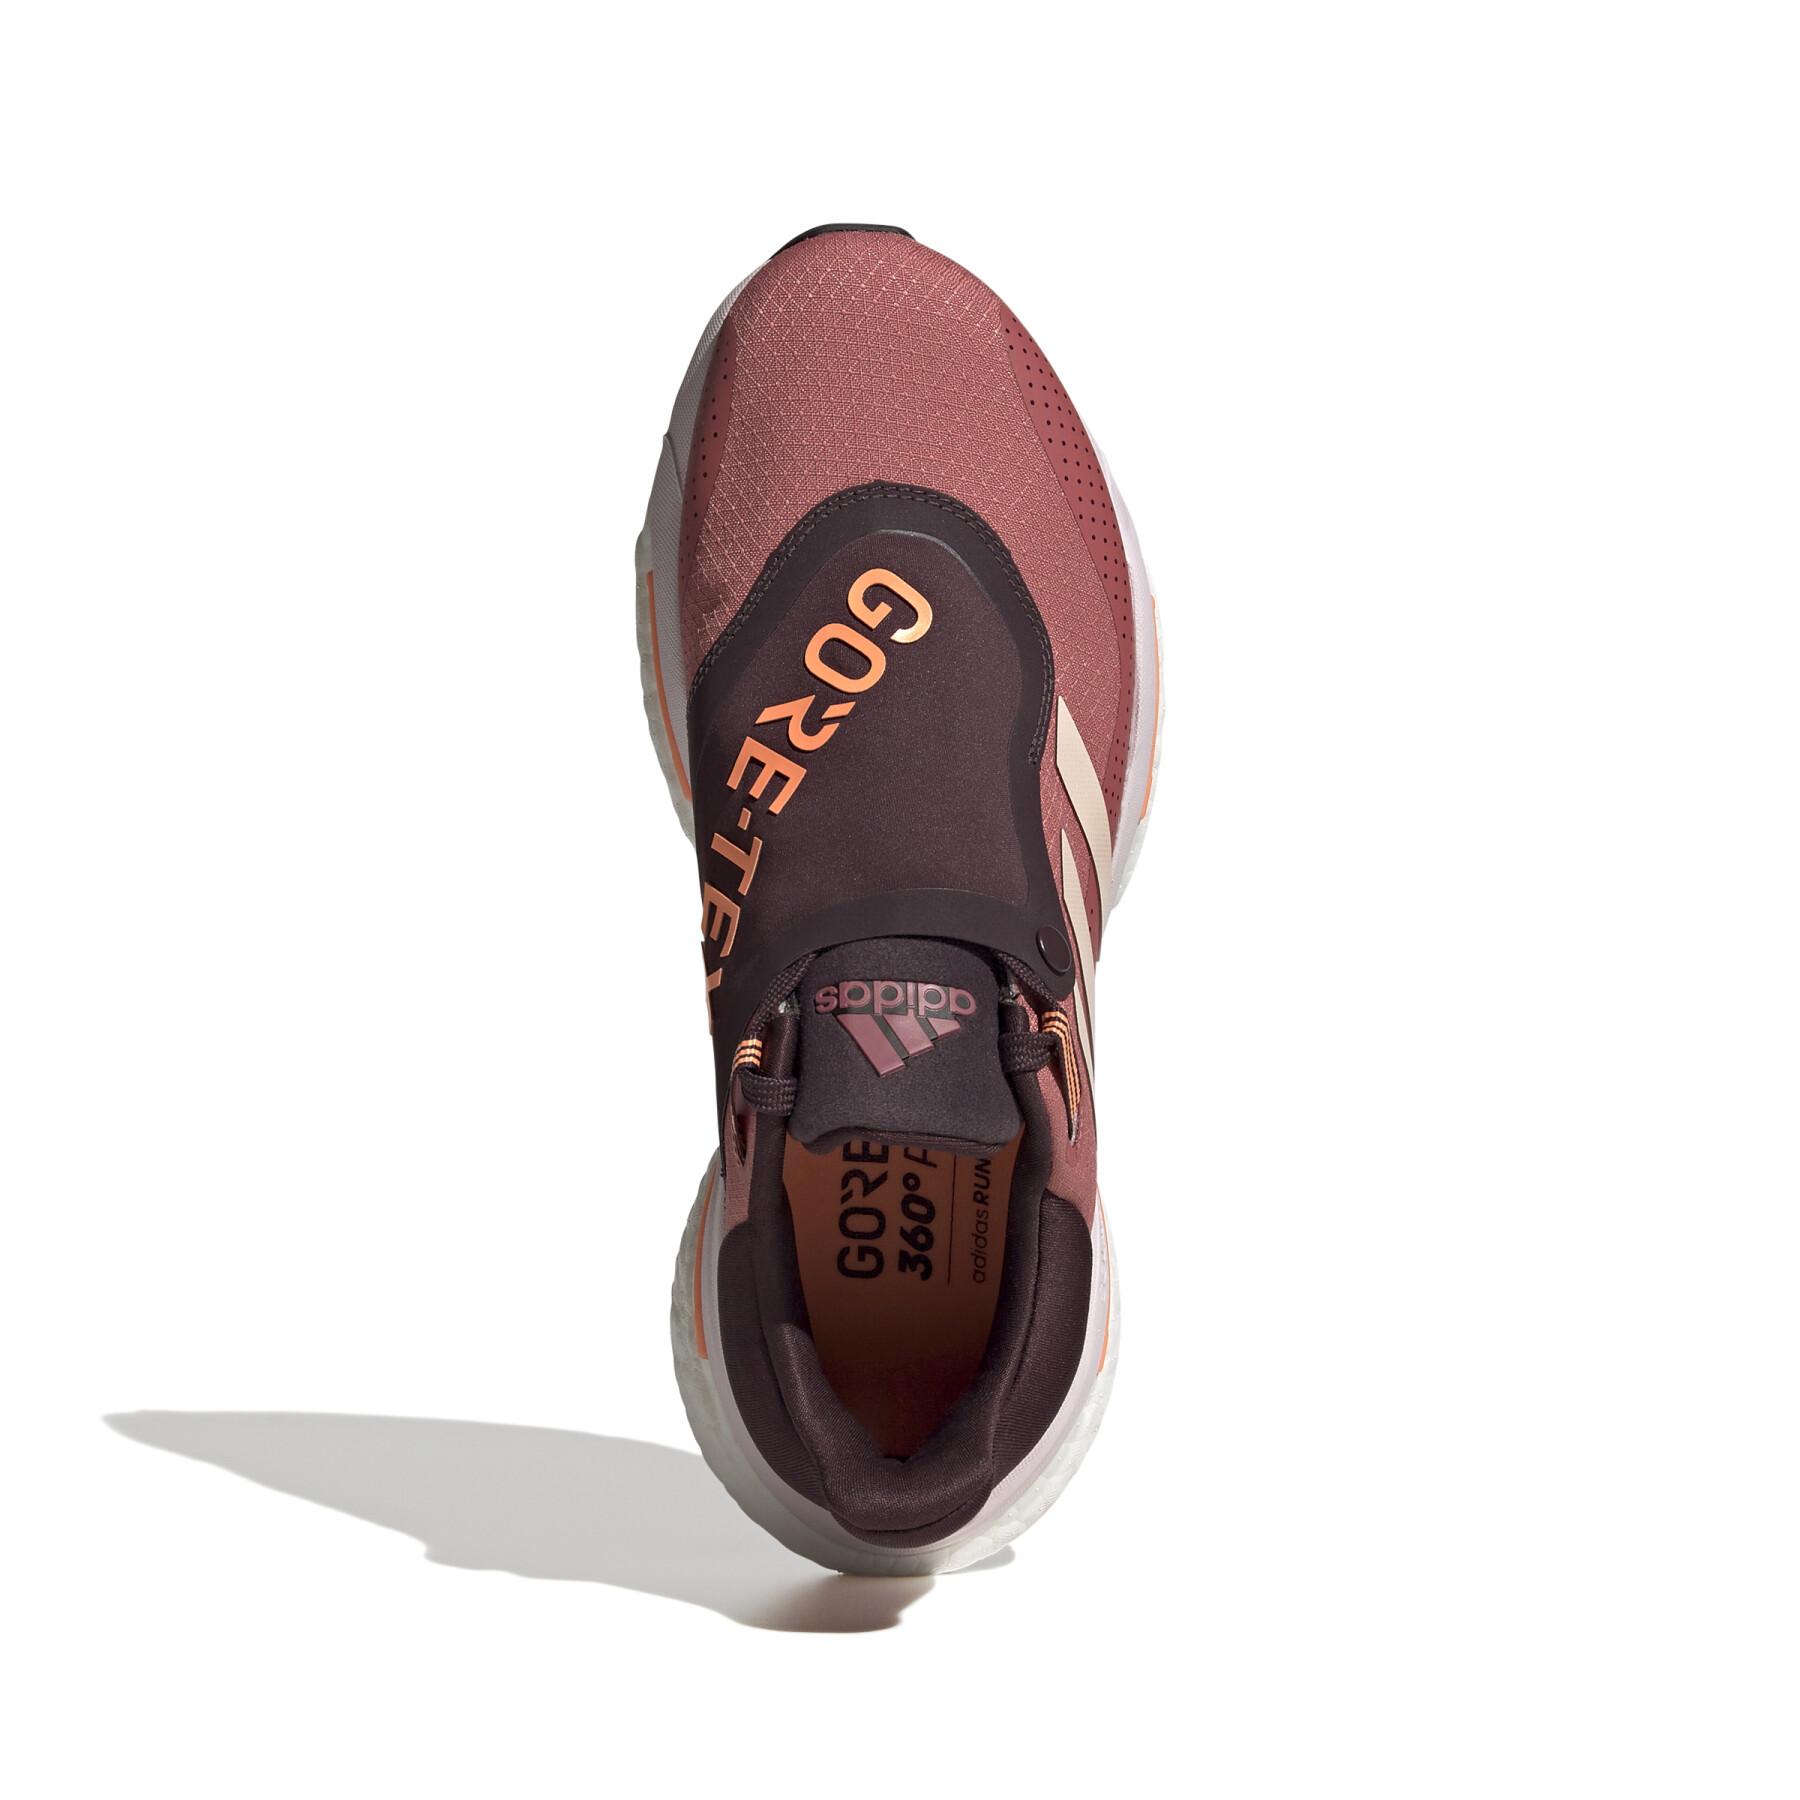 Chaussures de running femme adidas Solar Glide 5 Gore-Tex